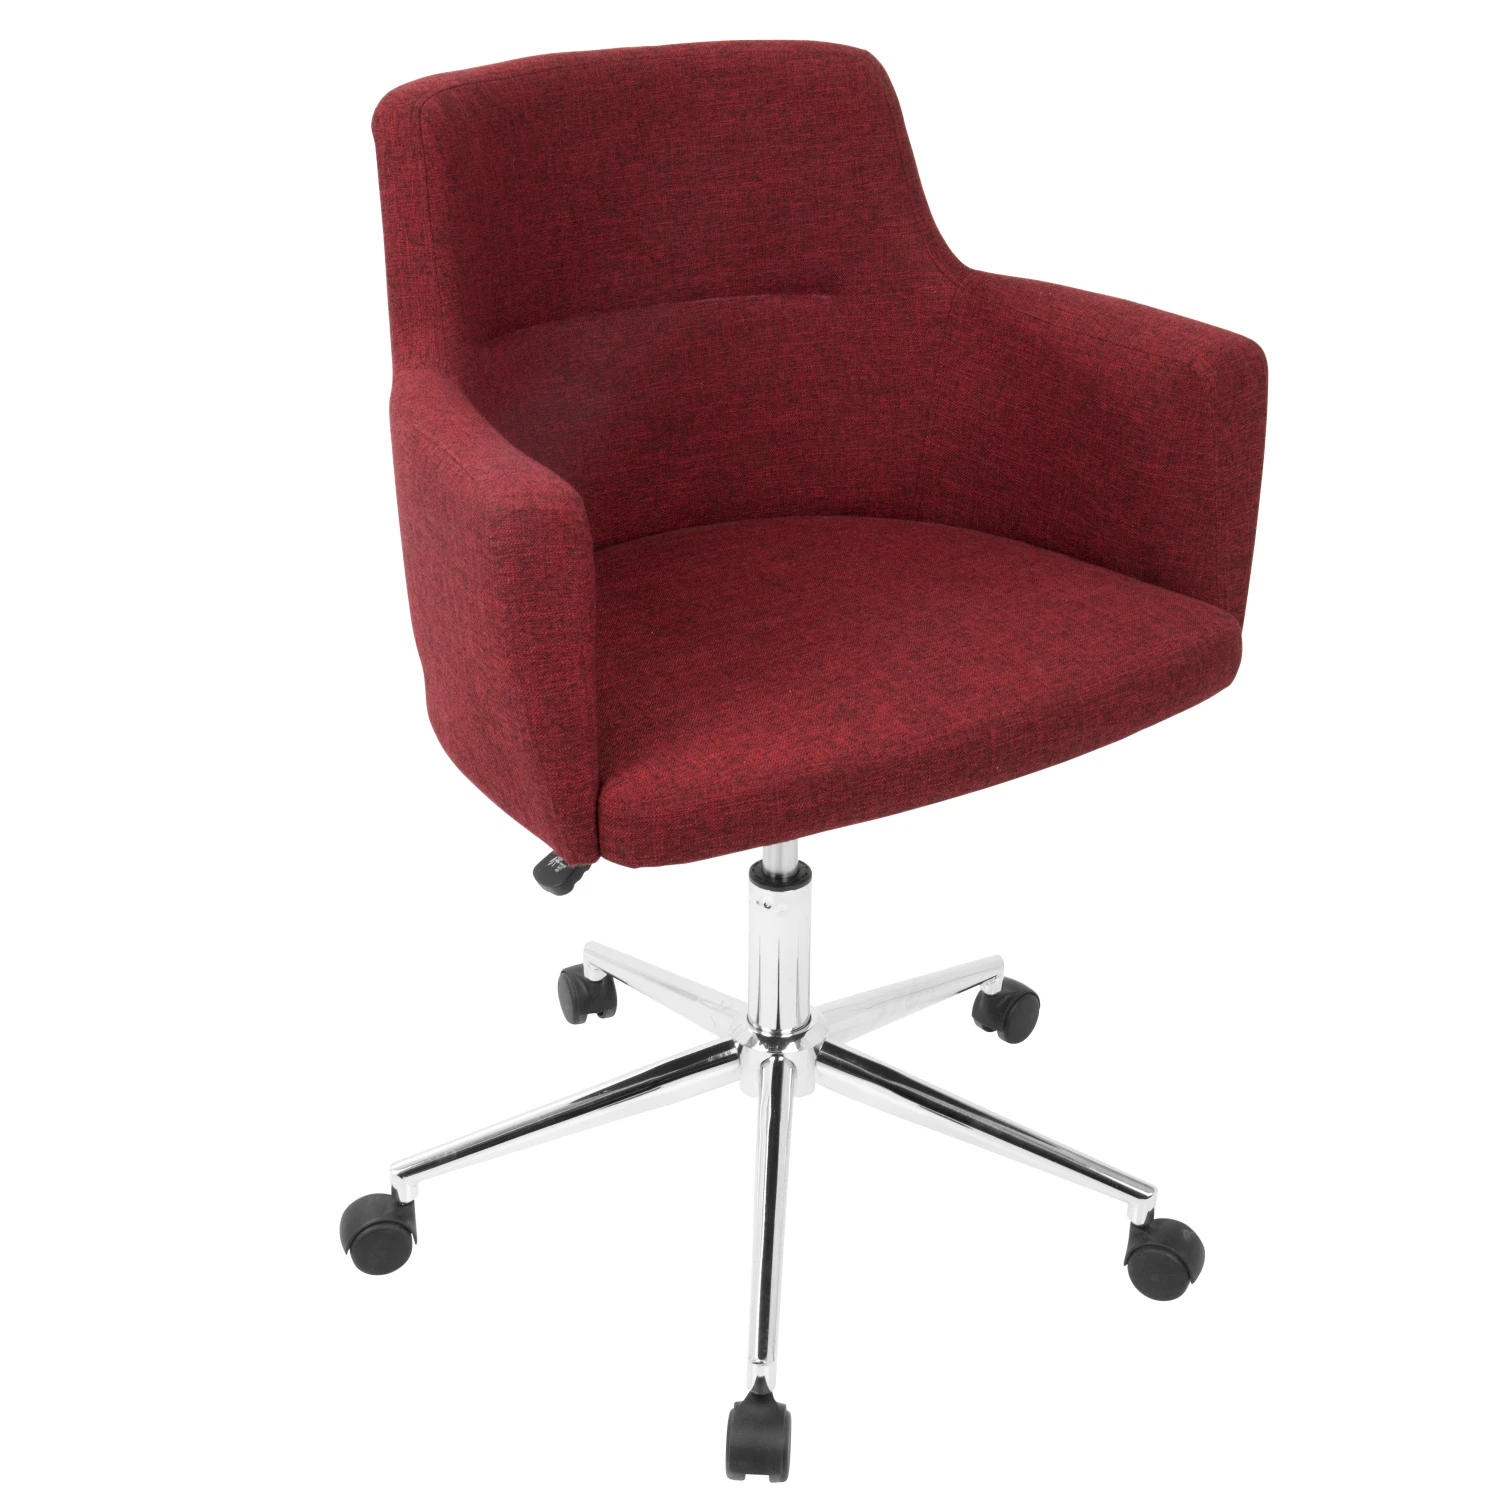 Kursi kantor merah kontemporer, dengan desain Modern dan dukungan ergonomis dari LumiSource